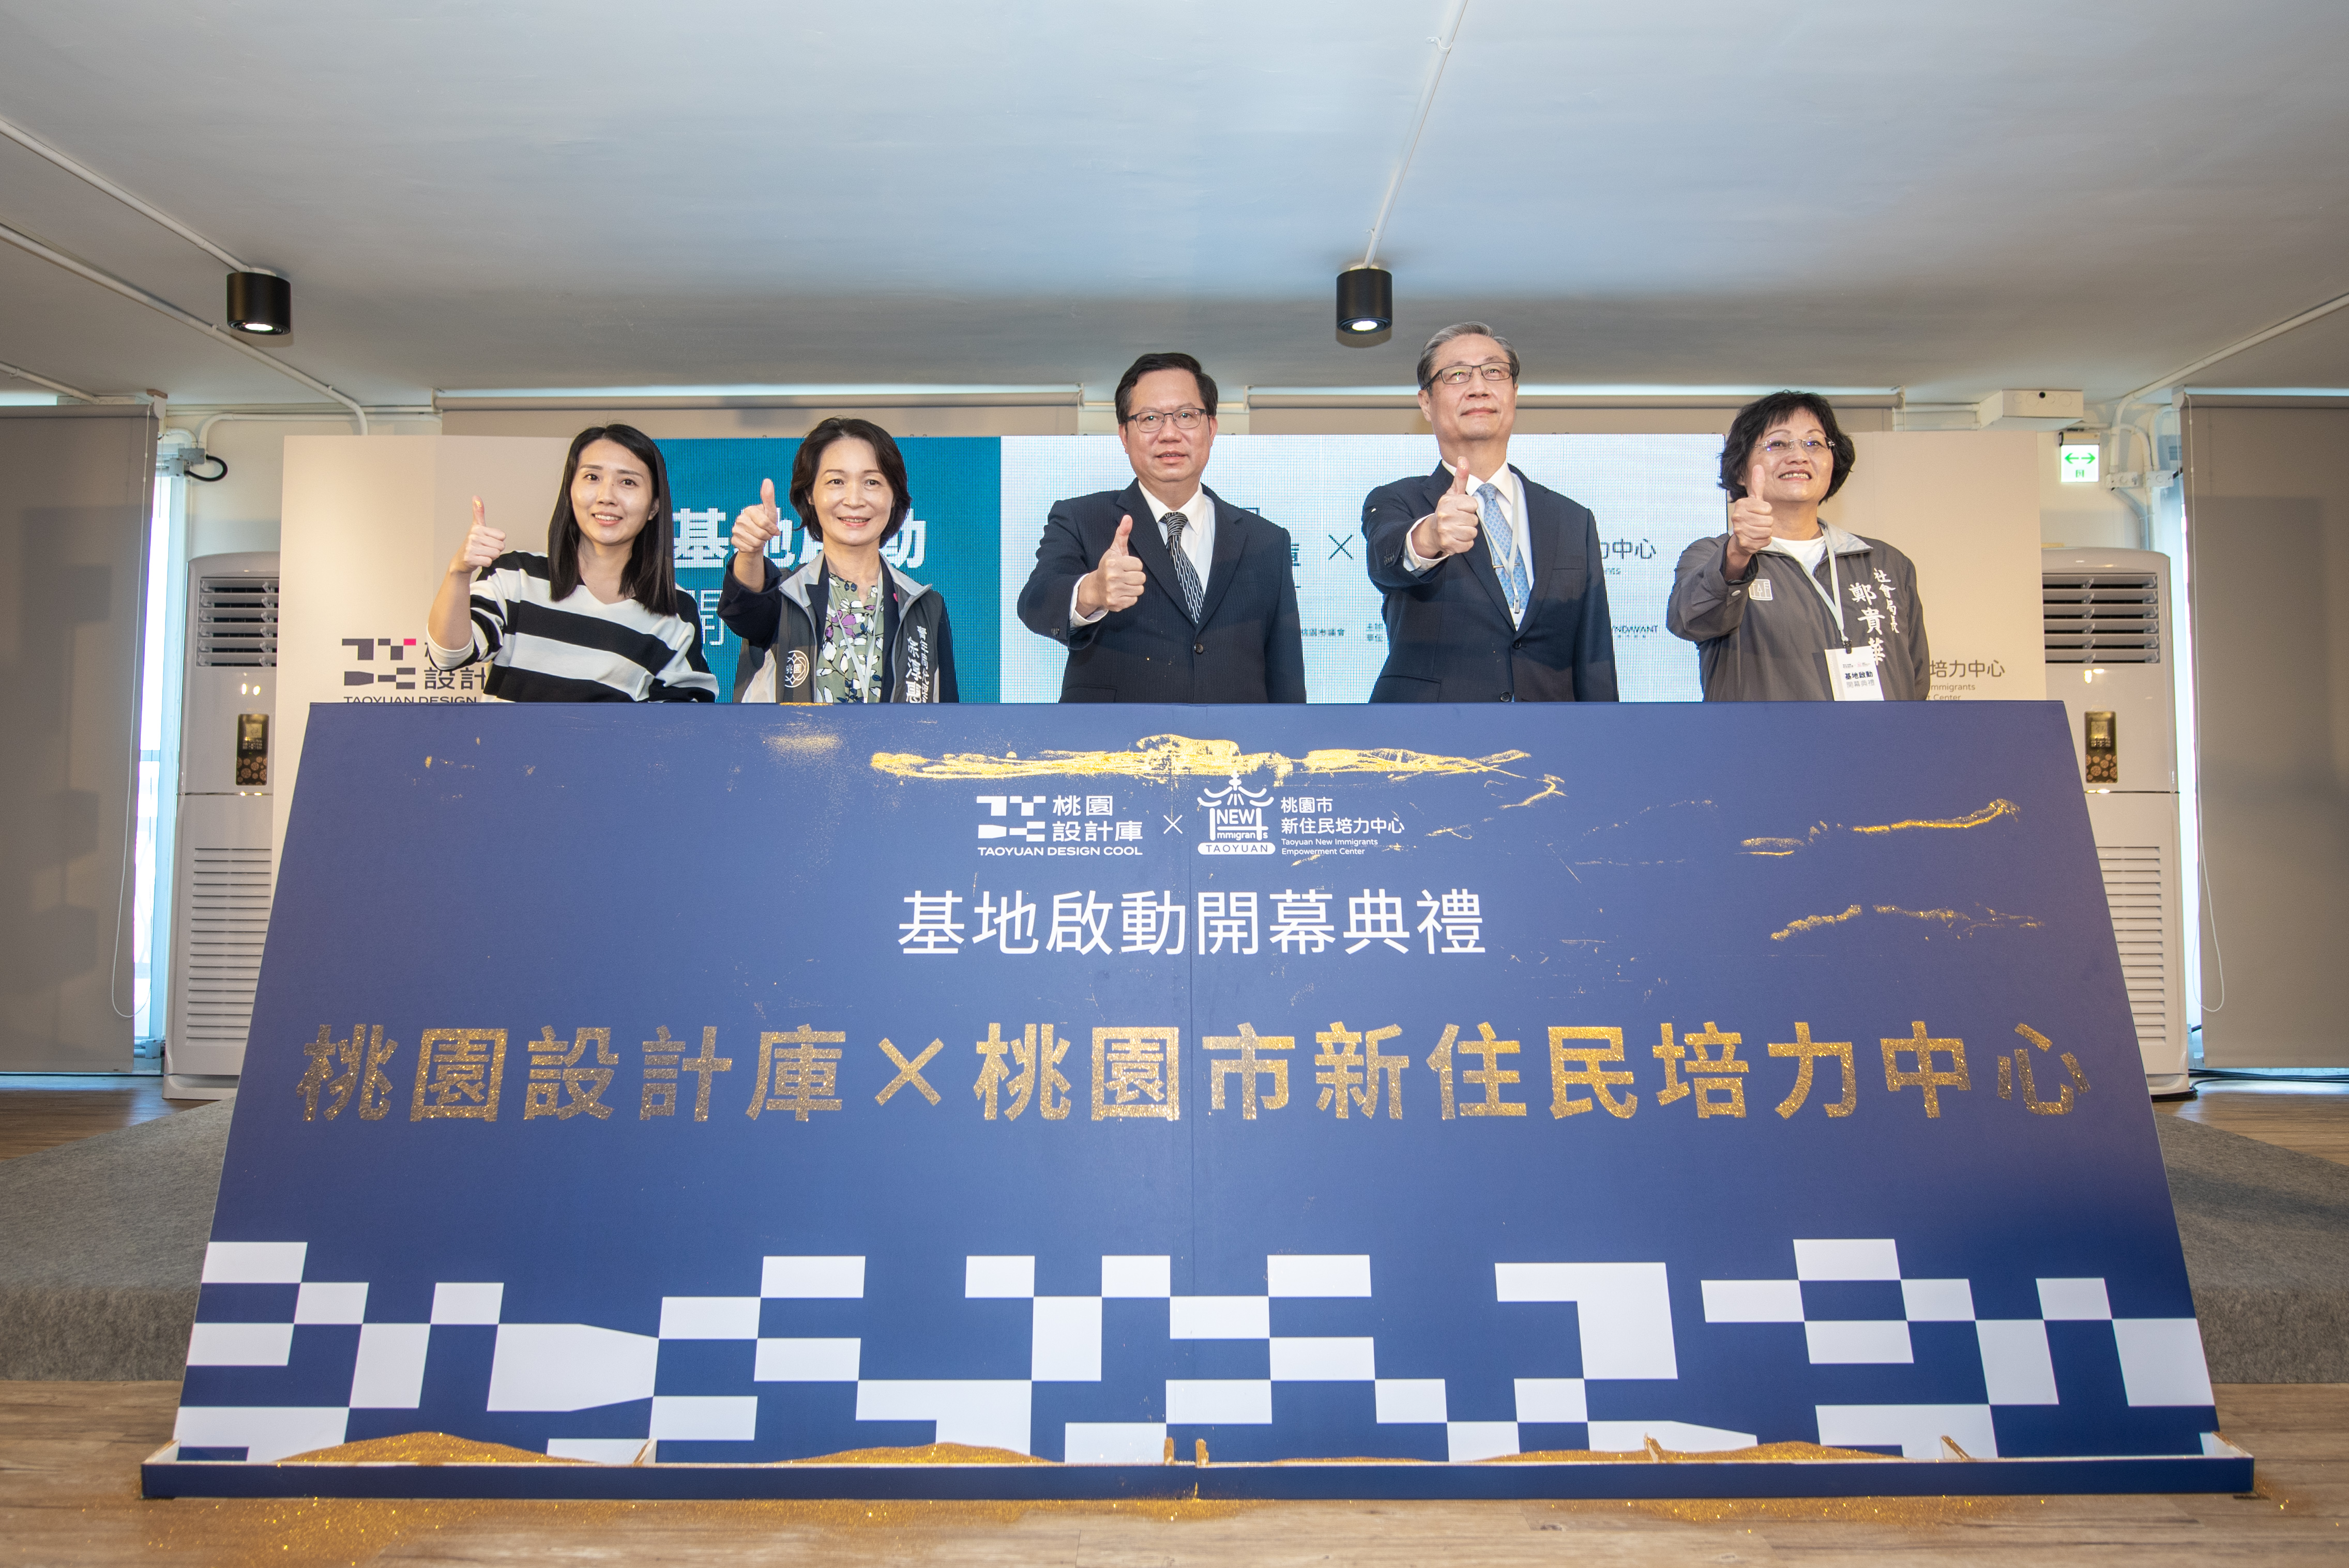 Kementerian Dalam Negeri Direktur Imigrasi Zhong Jingkun (kedua dari kanan), Walikota Taoyuan Zheng Wencan, Pejabat Direktur Biro Pemuda Kota Taoyuan Tu Chunhui dan tamu-tamu terhormat lainnya menghadiri upacara pembukaan. Pemerintah Kota Taoyuan